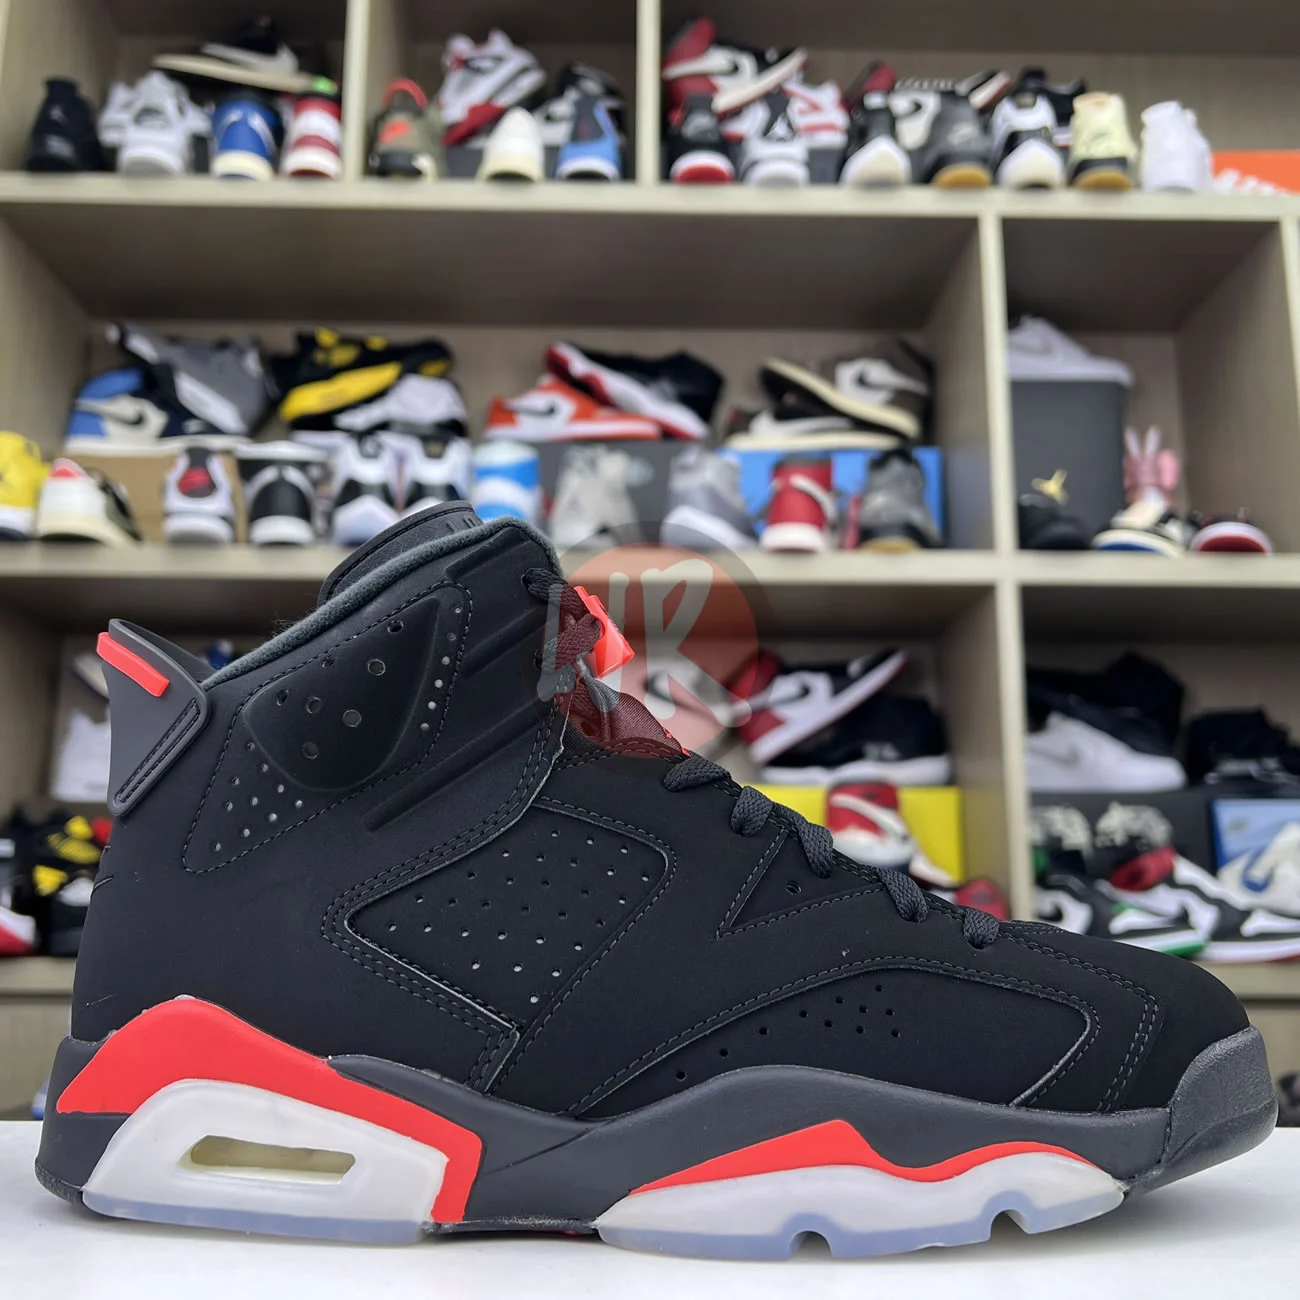 Air Jordan 6 Retro Black Infrared 2019 384664 060 Ljr Sneakers (2) - www.ljrofficial.com